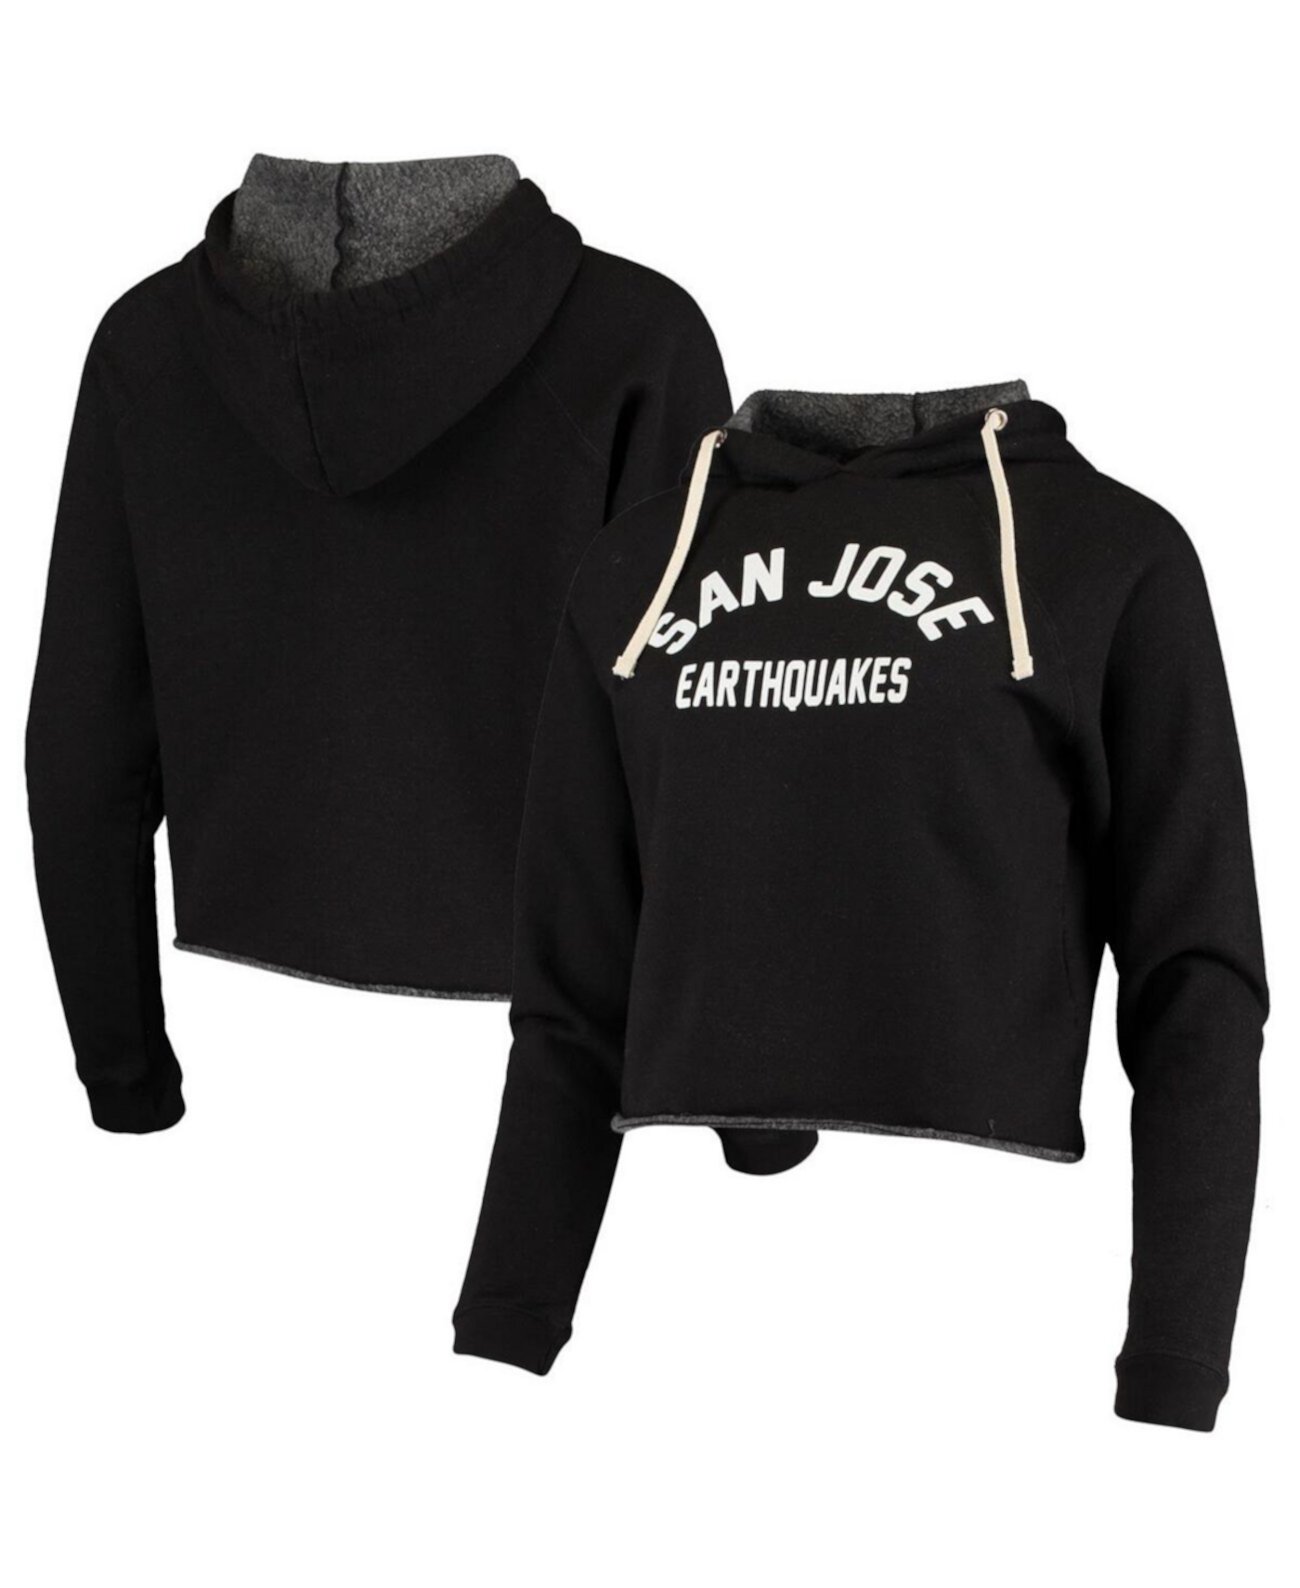 Женский укороченный пуловер с капюшоном черного цвета San Jose Earthquakes Wordmark Original Retro Brand